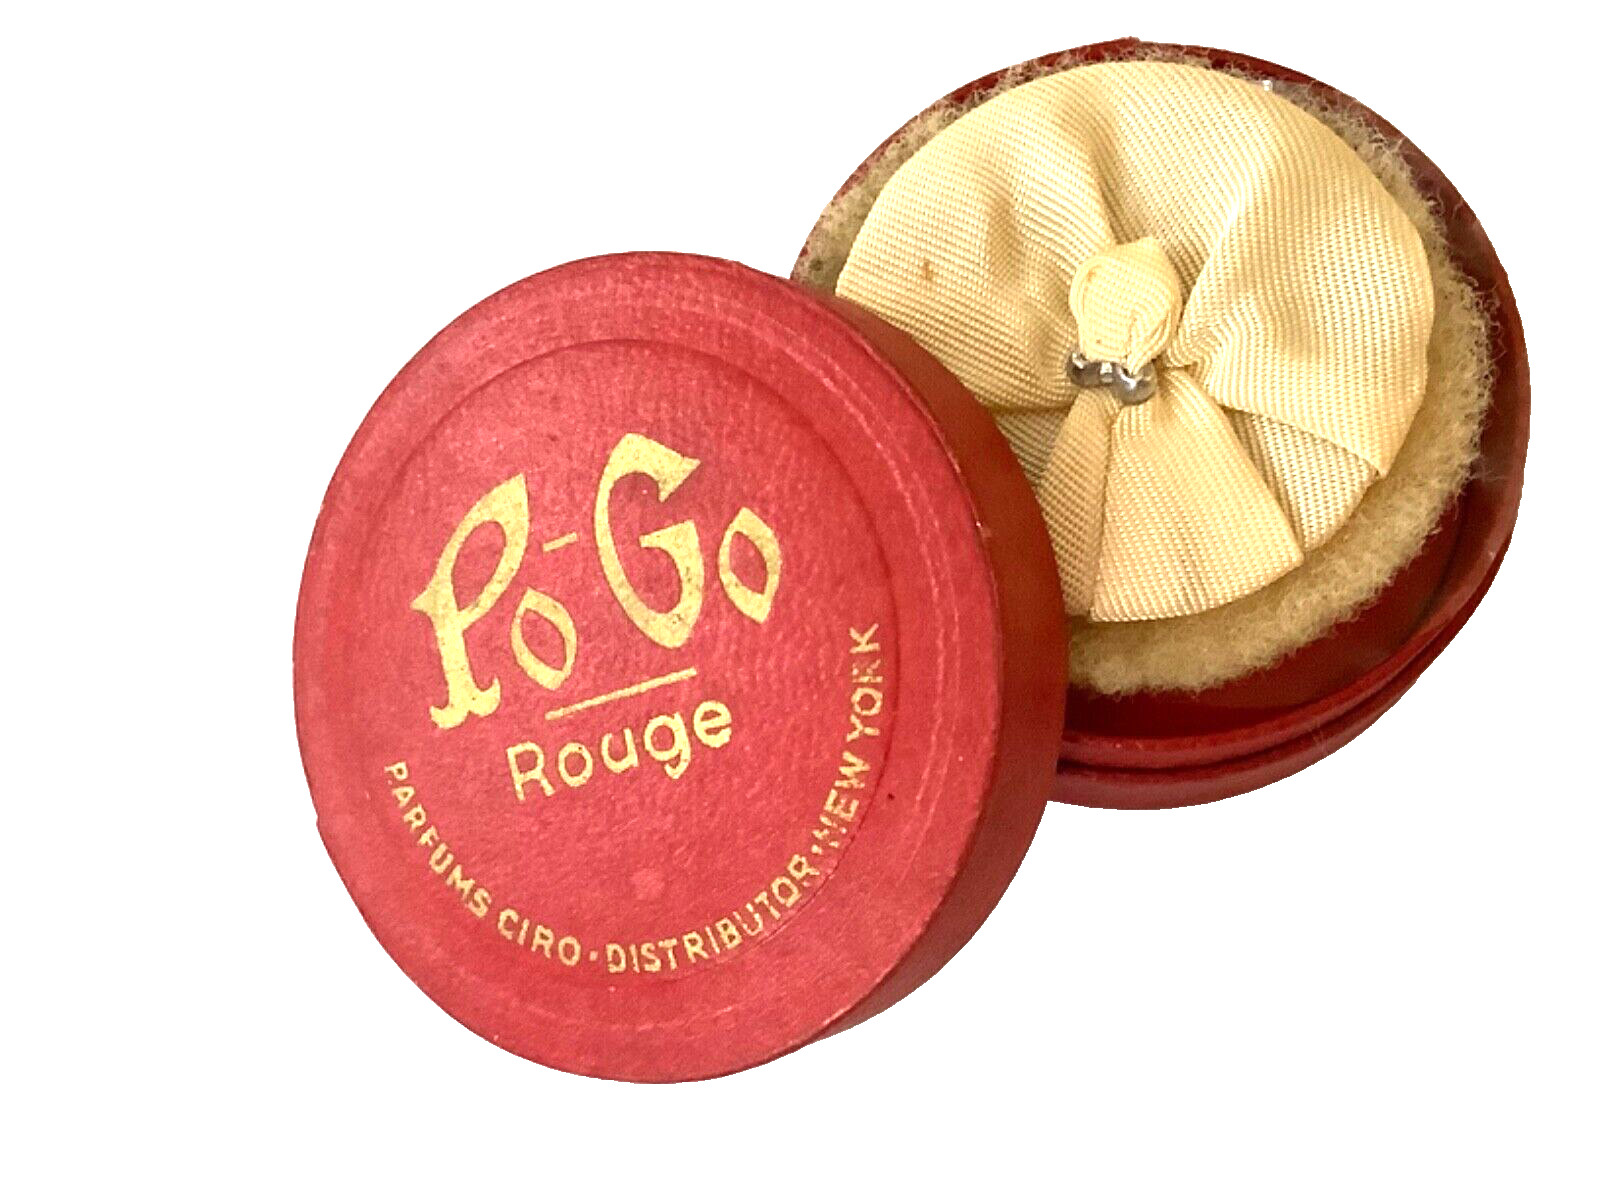 1930 💋 PO GO “Cardinal” ROUGE POWDER BOX & PUFF PARFUM CIRO Antique💋 NOS 1930s